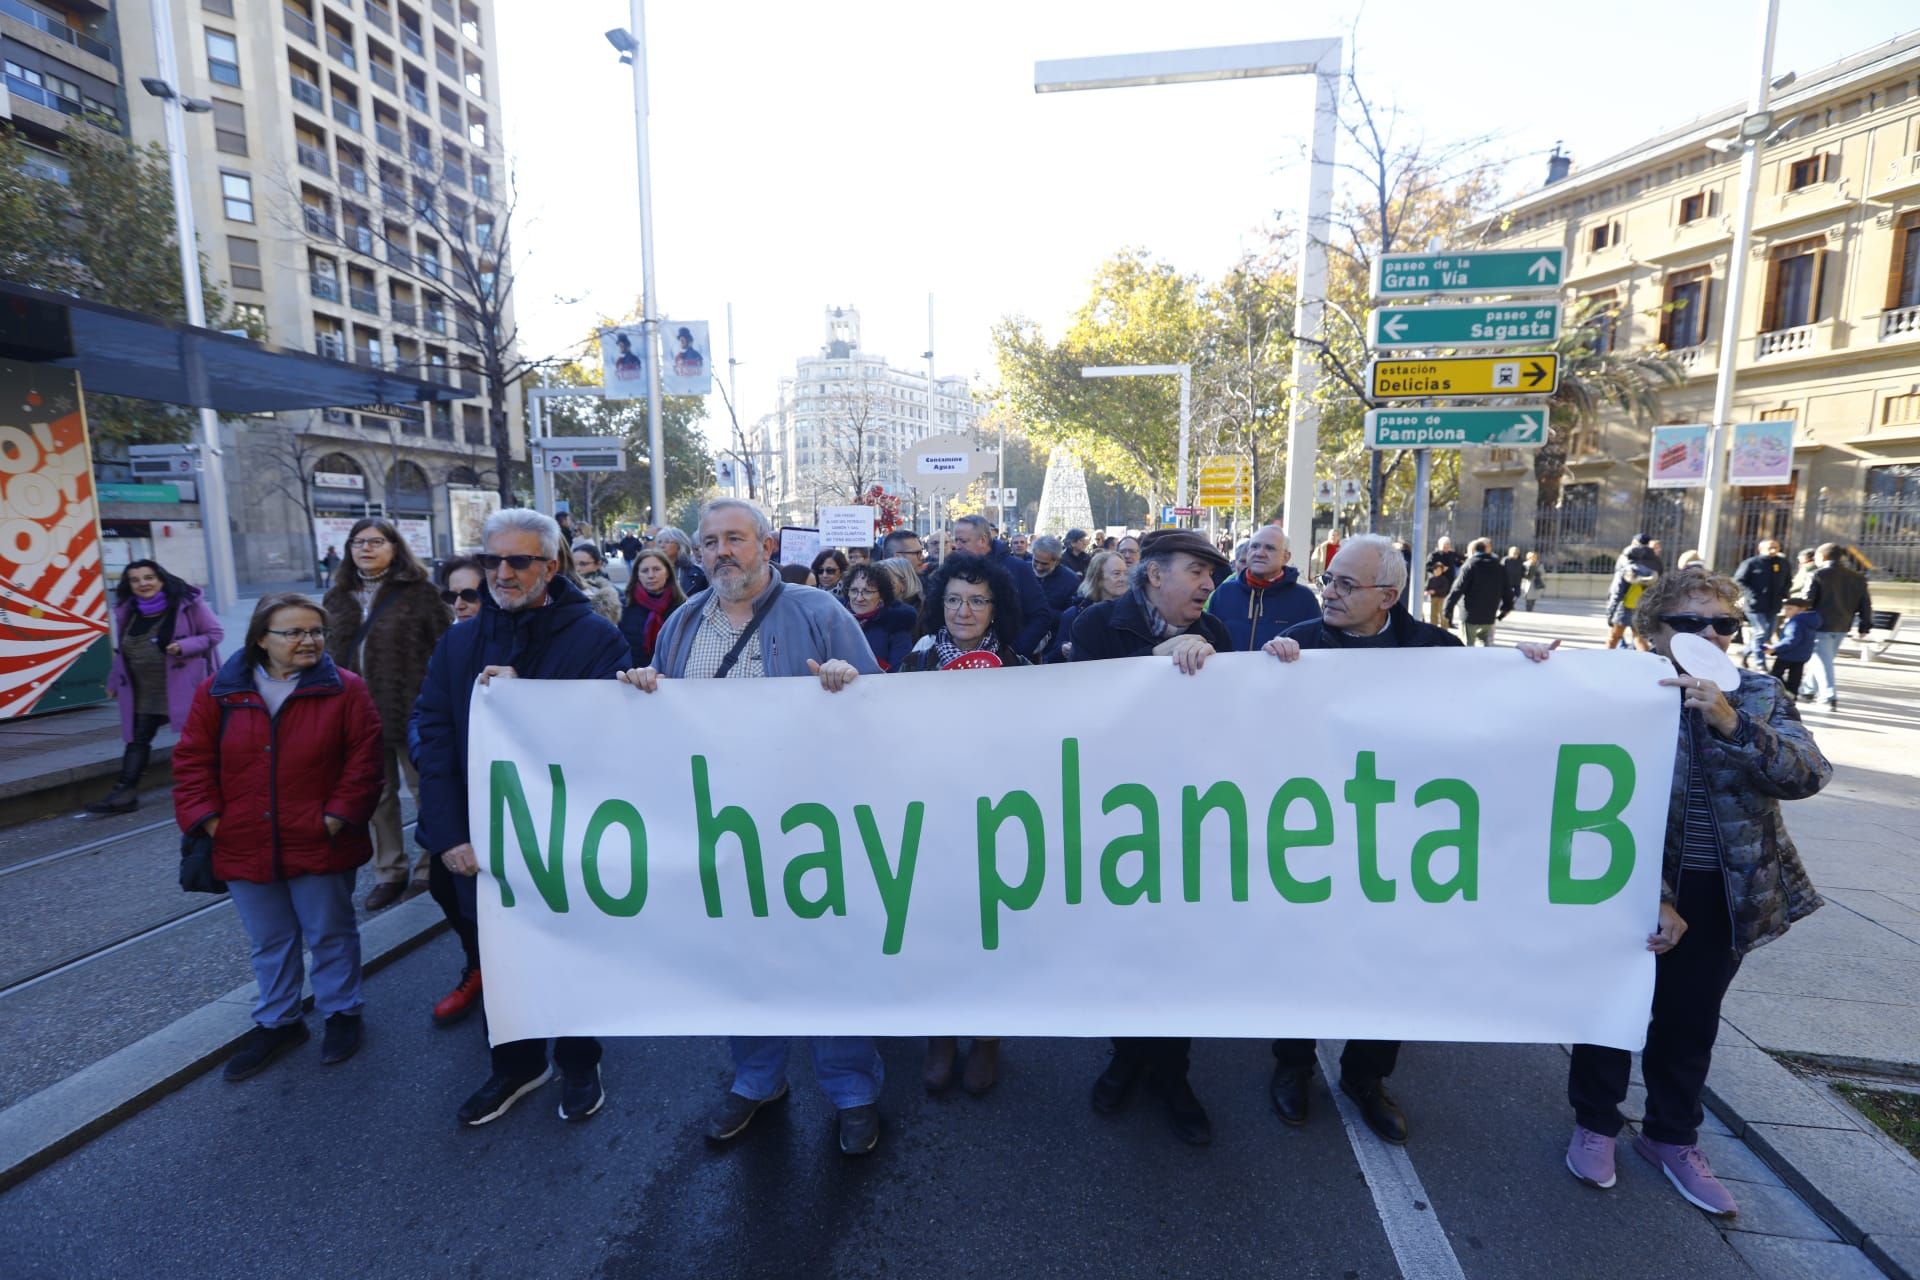 Cientos de personas se concentran contra el cambio climático en Zaragoza